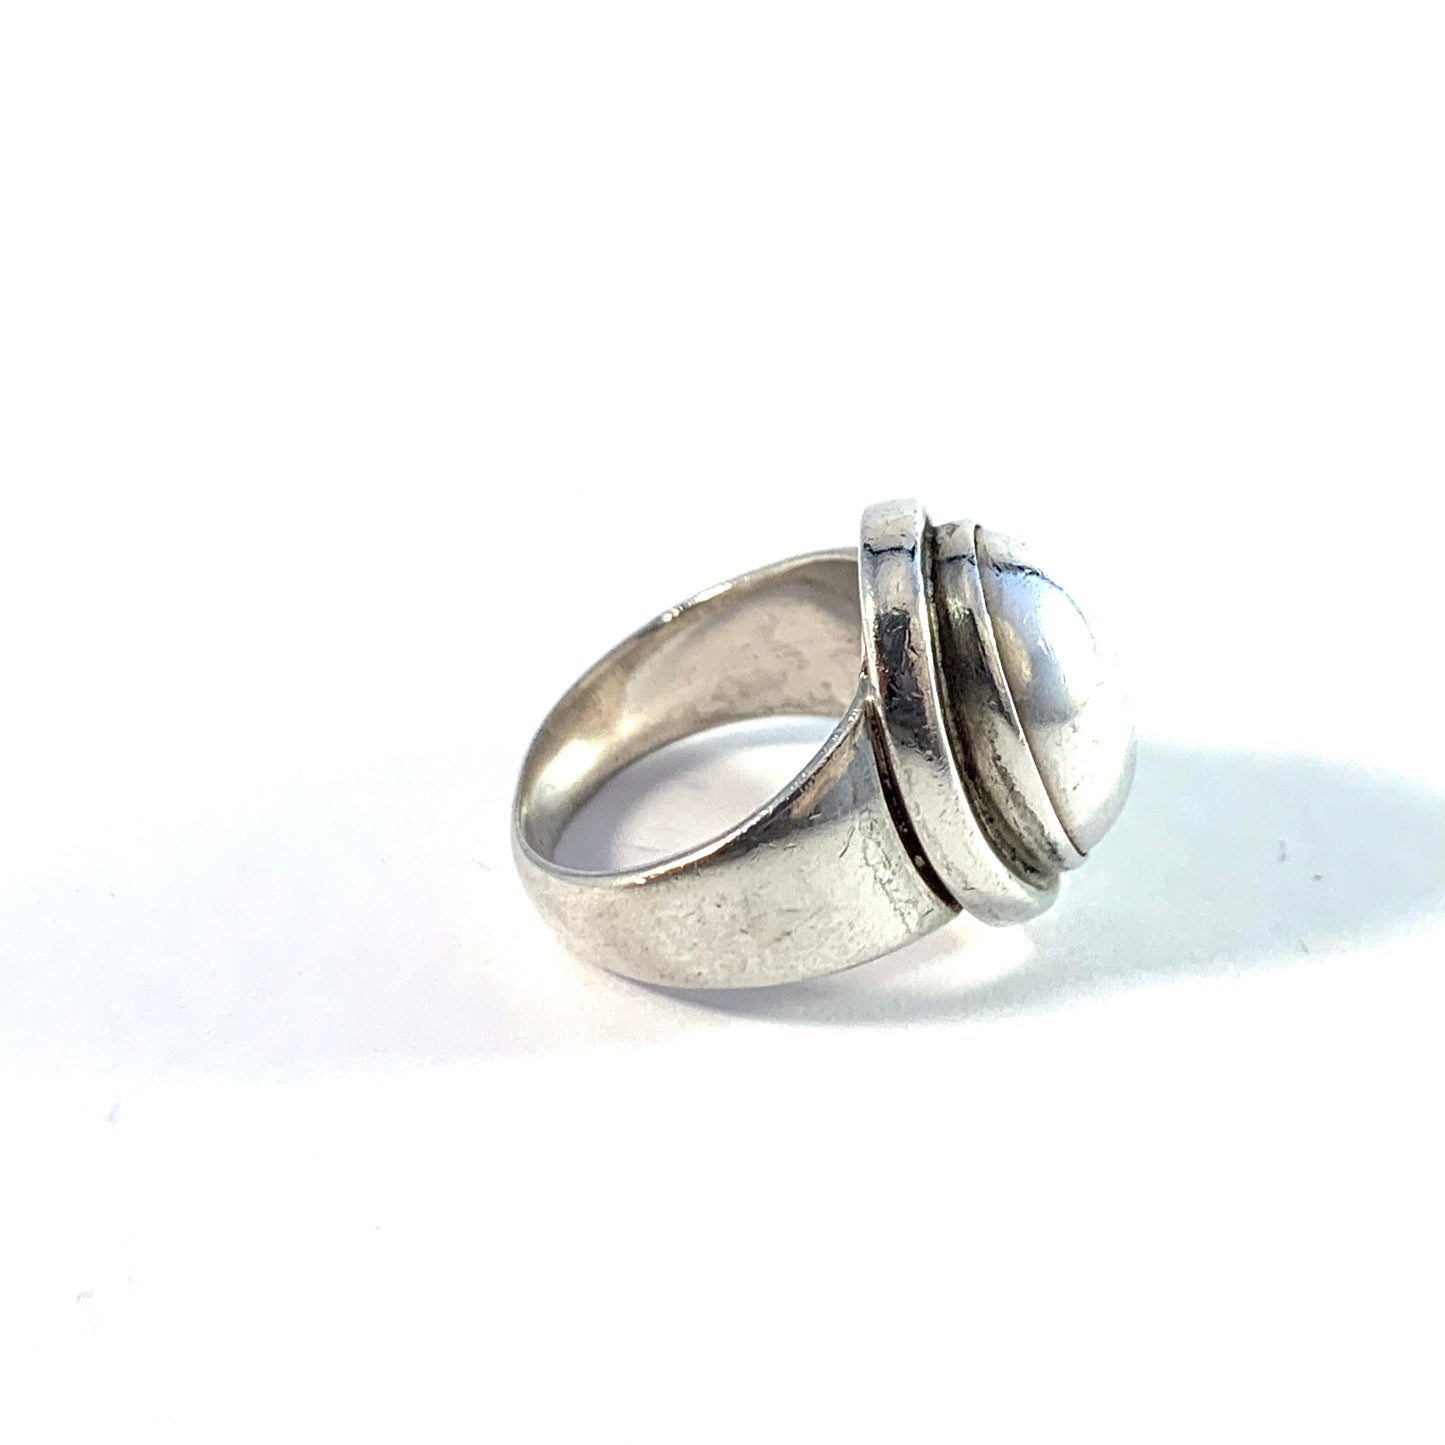 Harald Nielsen for Georg Jensen, Denmark.  Vintage Sterling Silver Pinky Ring. Design 46B